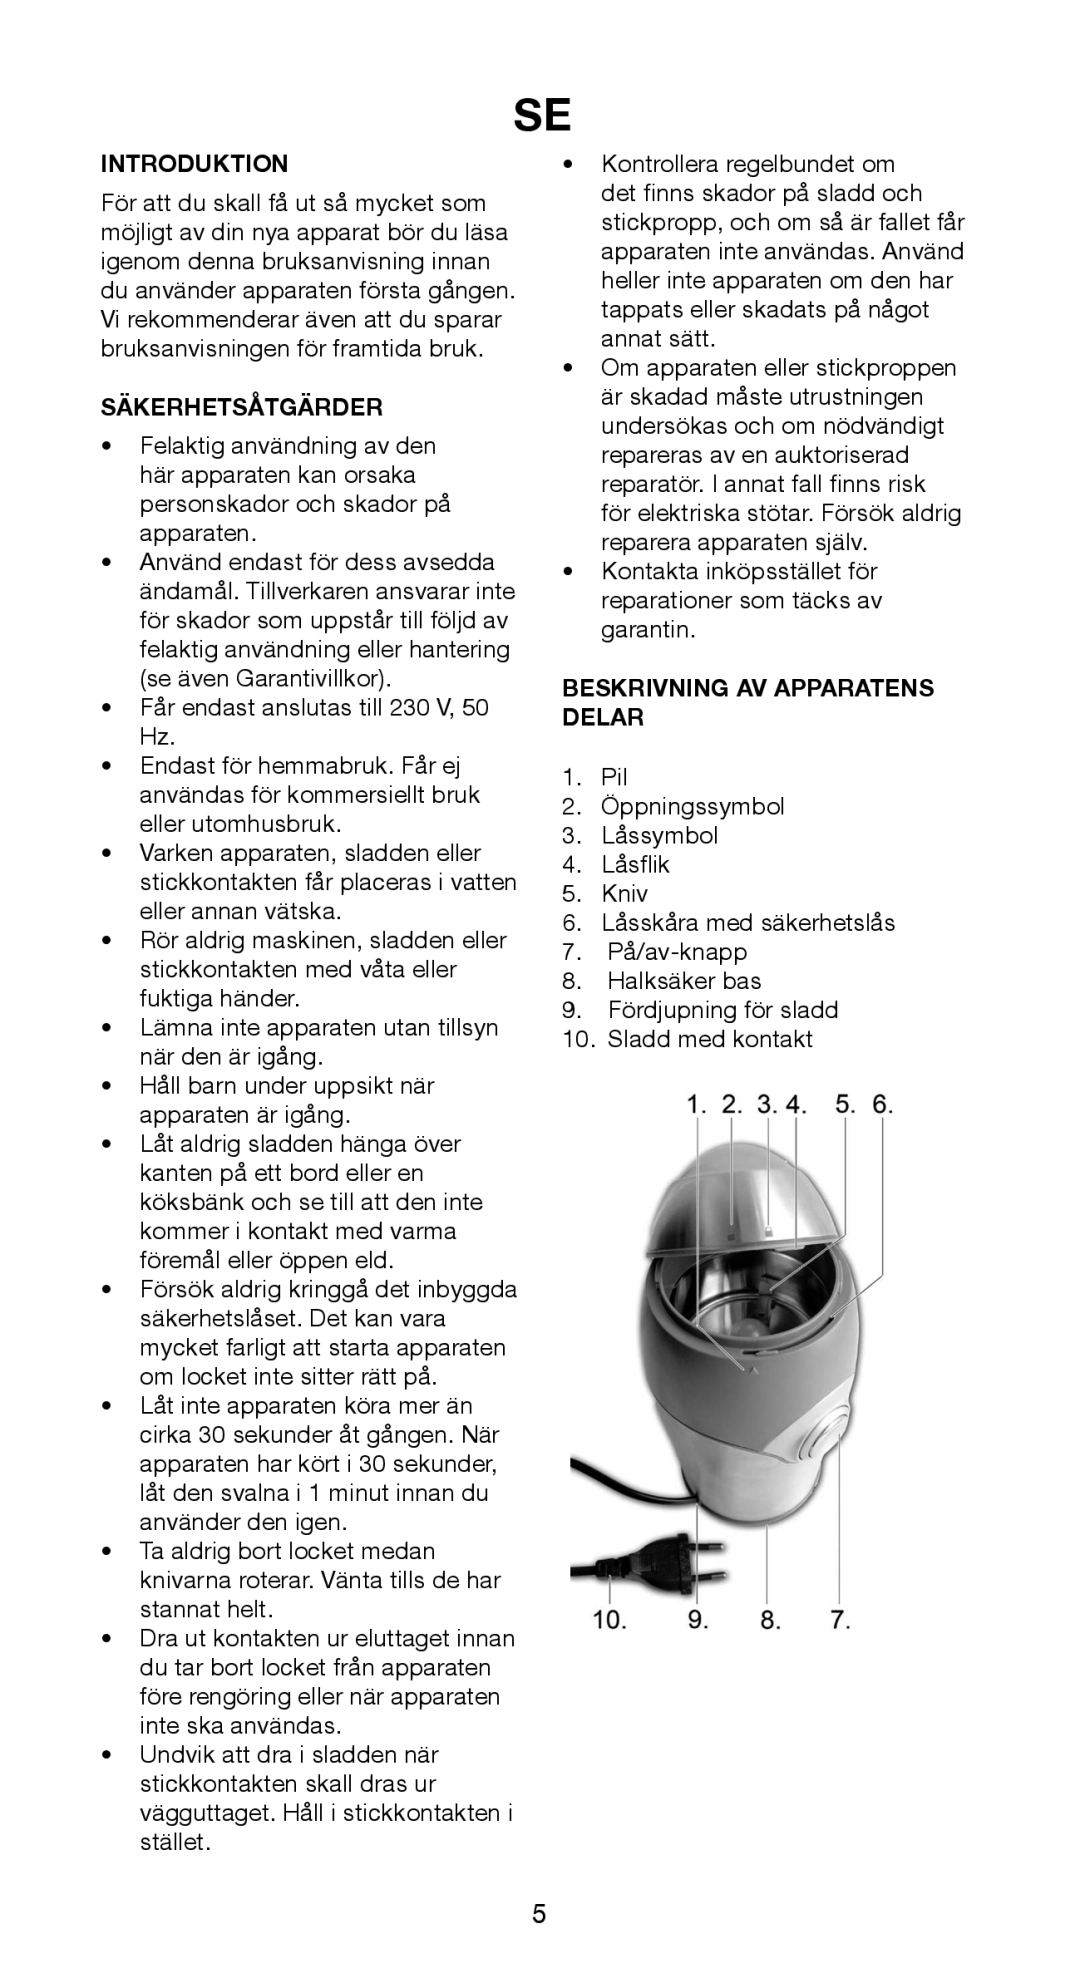 Melissa 745-95 manual Säkerhetsåtgärder, Beskrivning Av Apparatens Delar, Introduktion 